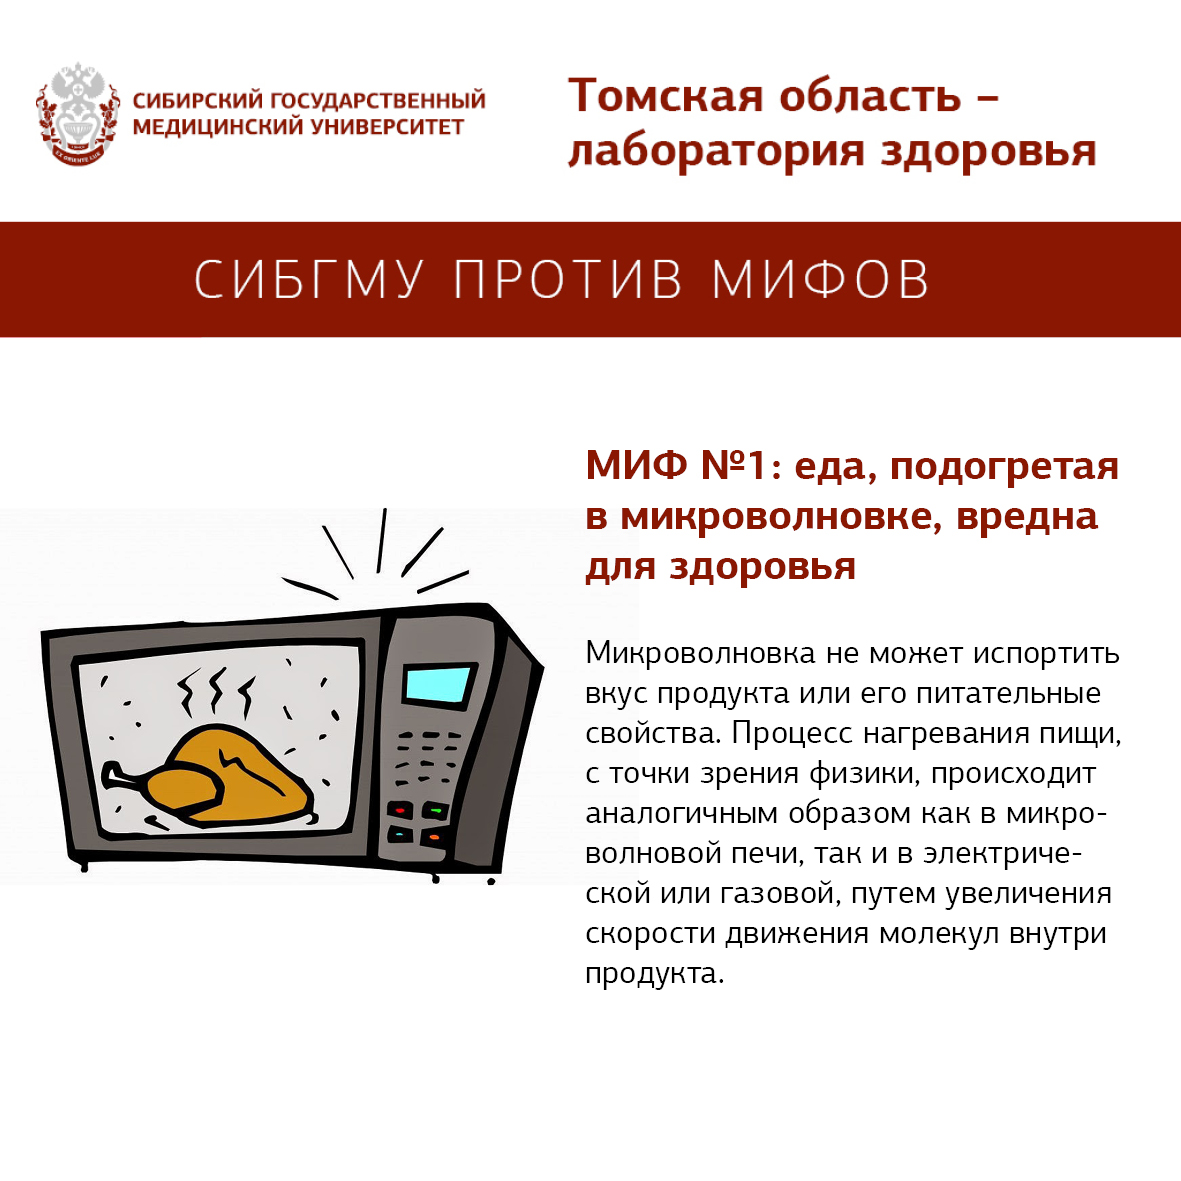 Какая бытовая техника действительно опасна для здоровья? : обзоры: бытовая техника — ferra.ru